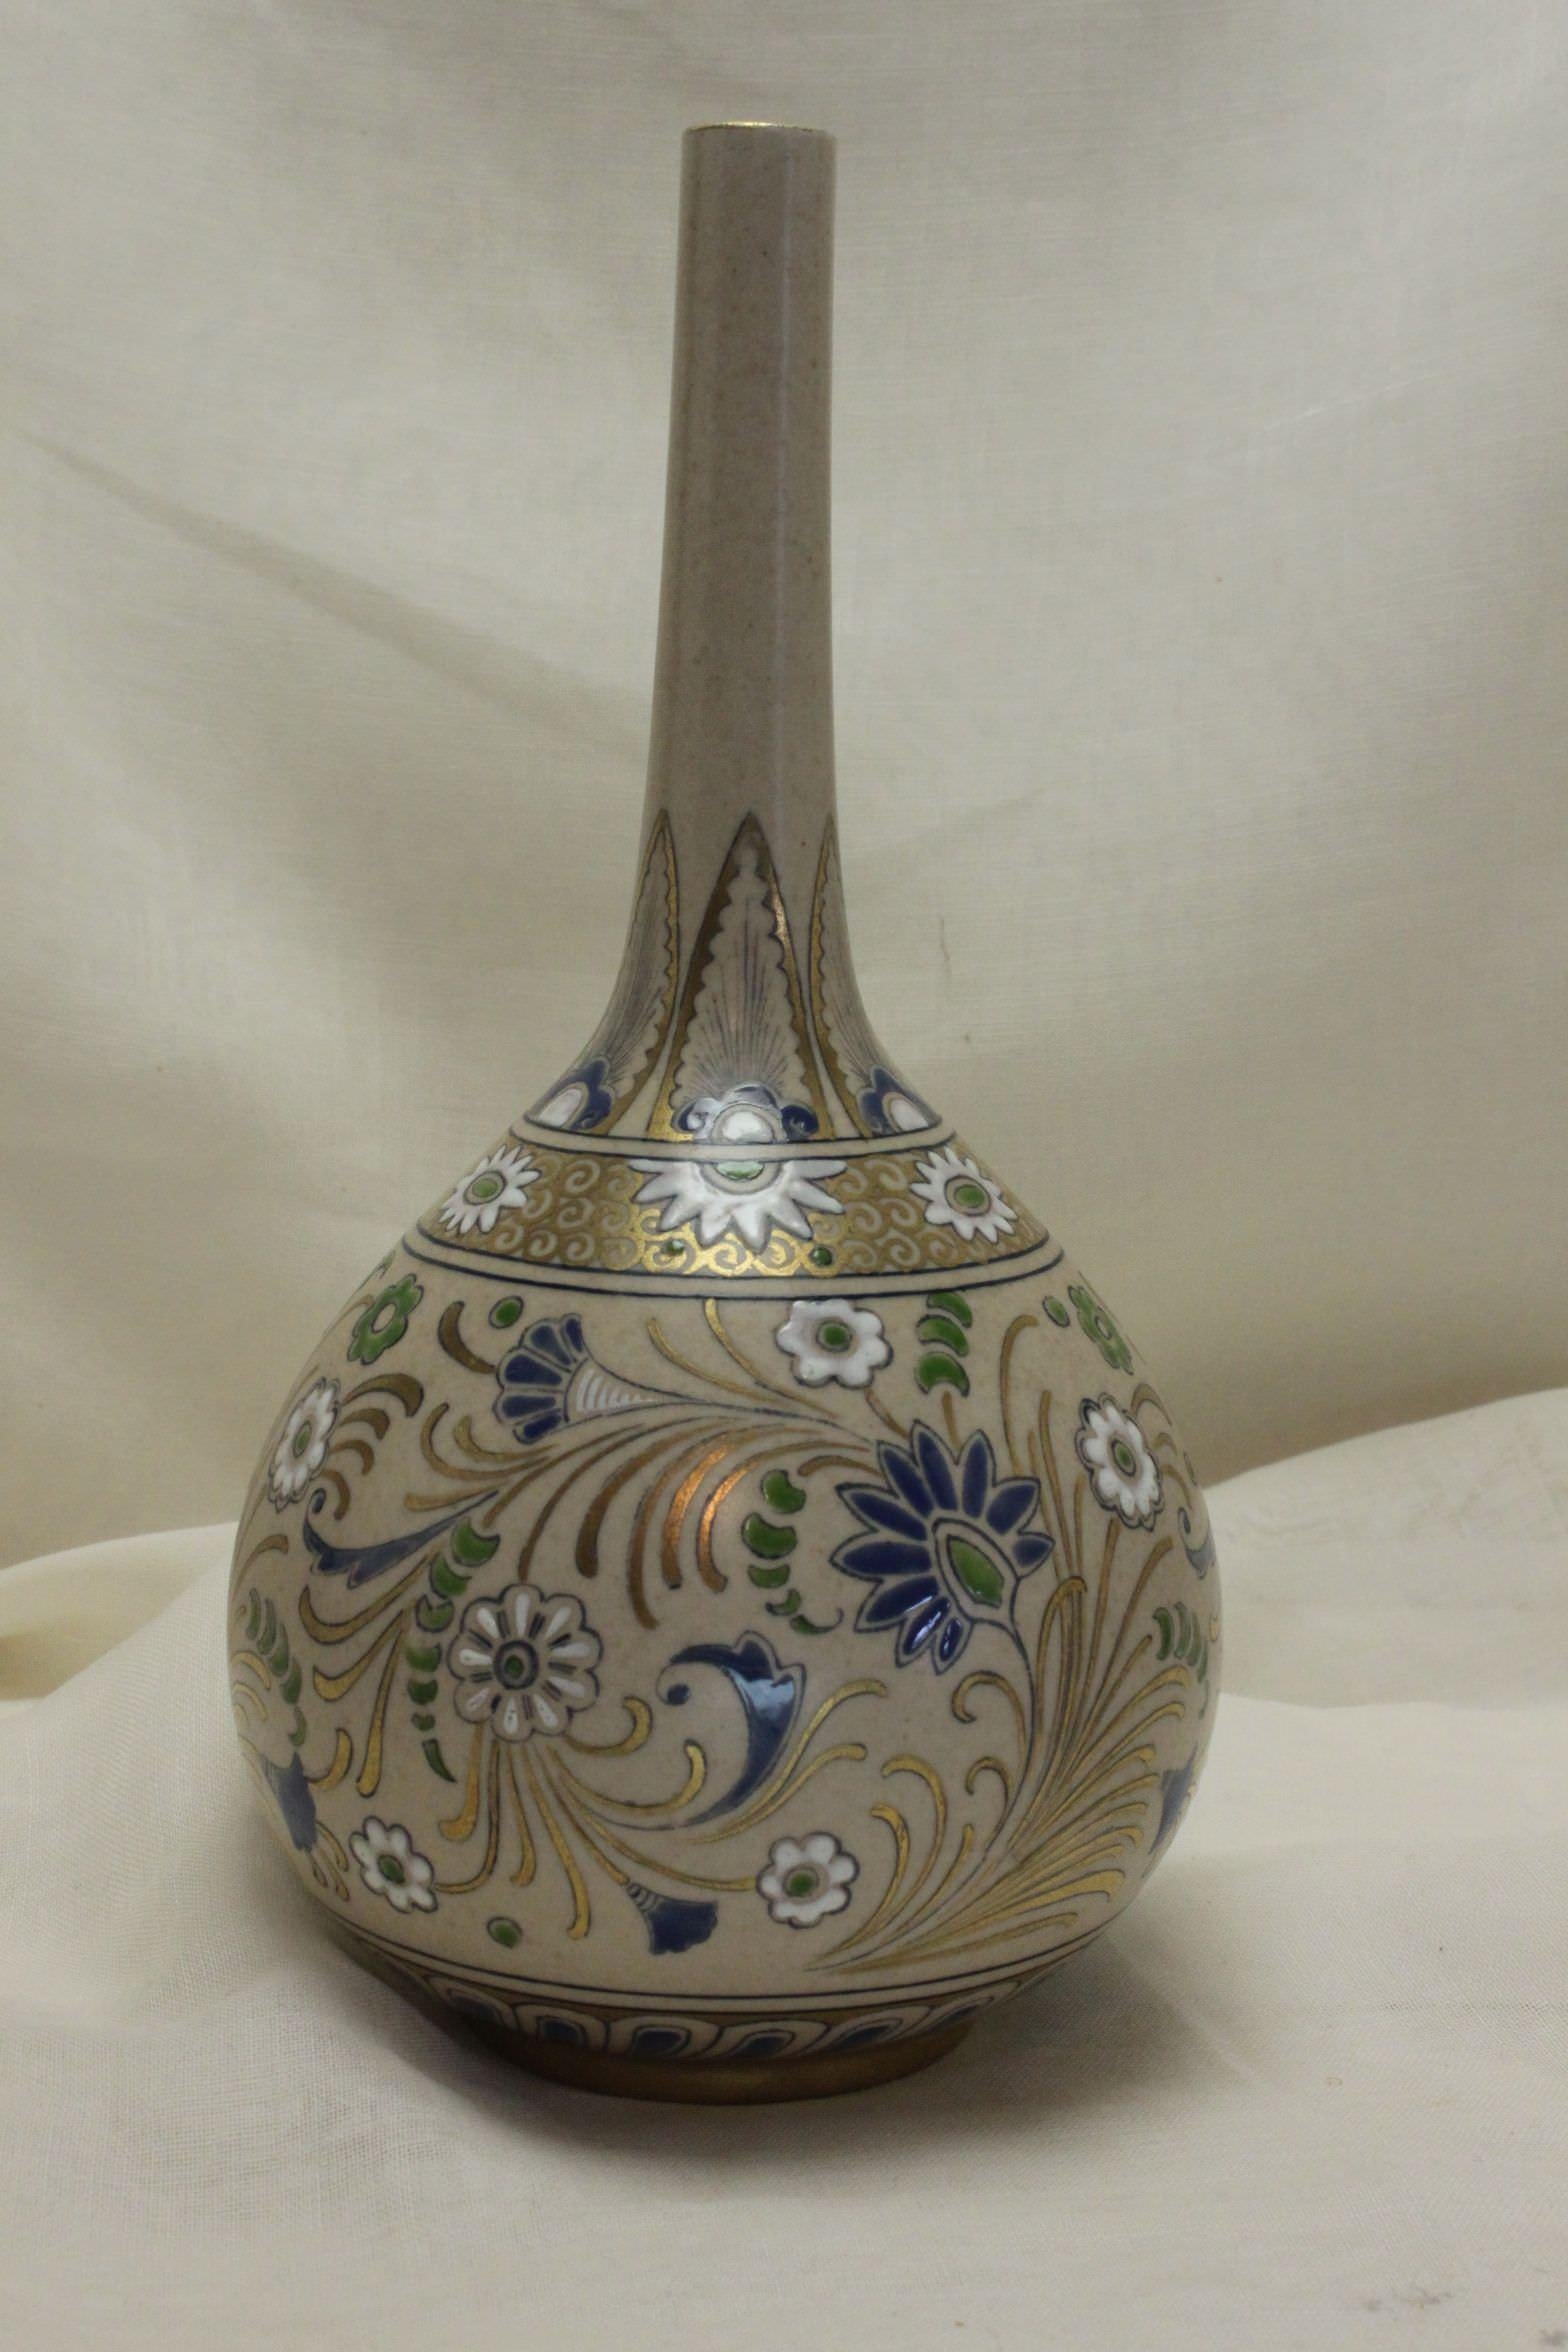 Ce vase spécimen Lambeth de Doulton en forme de bouteille provient de la gamme Carrara Ware, une gamme de grès de production modérée fabriquée entre 1887 et 1903 environ. Ce vase a été conçu par Mildred B Smallfield (1862- ?) qui était répertoriée